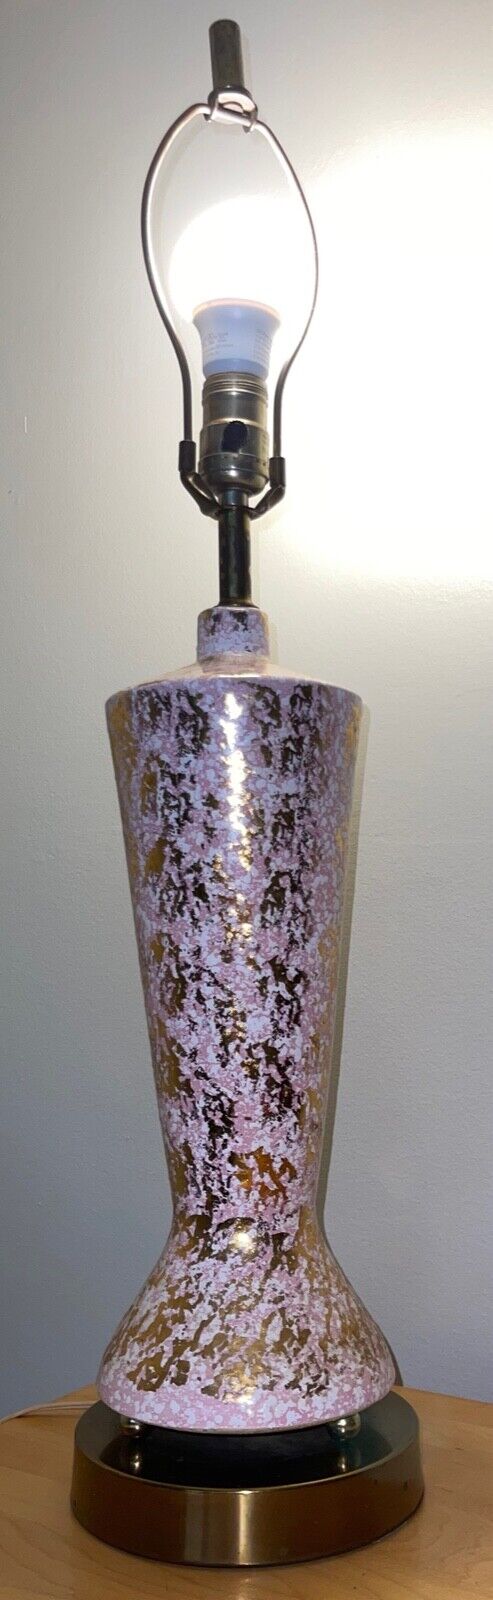 Vintage 1950s Pink Gold Ceramic Lamp Atomic Era Mid Century Modern Lighting MCM